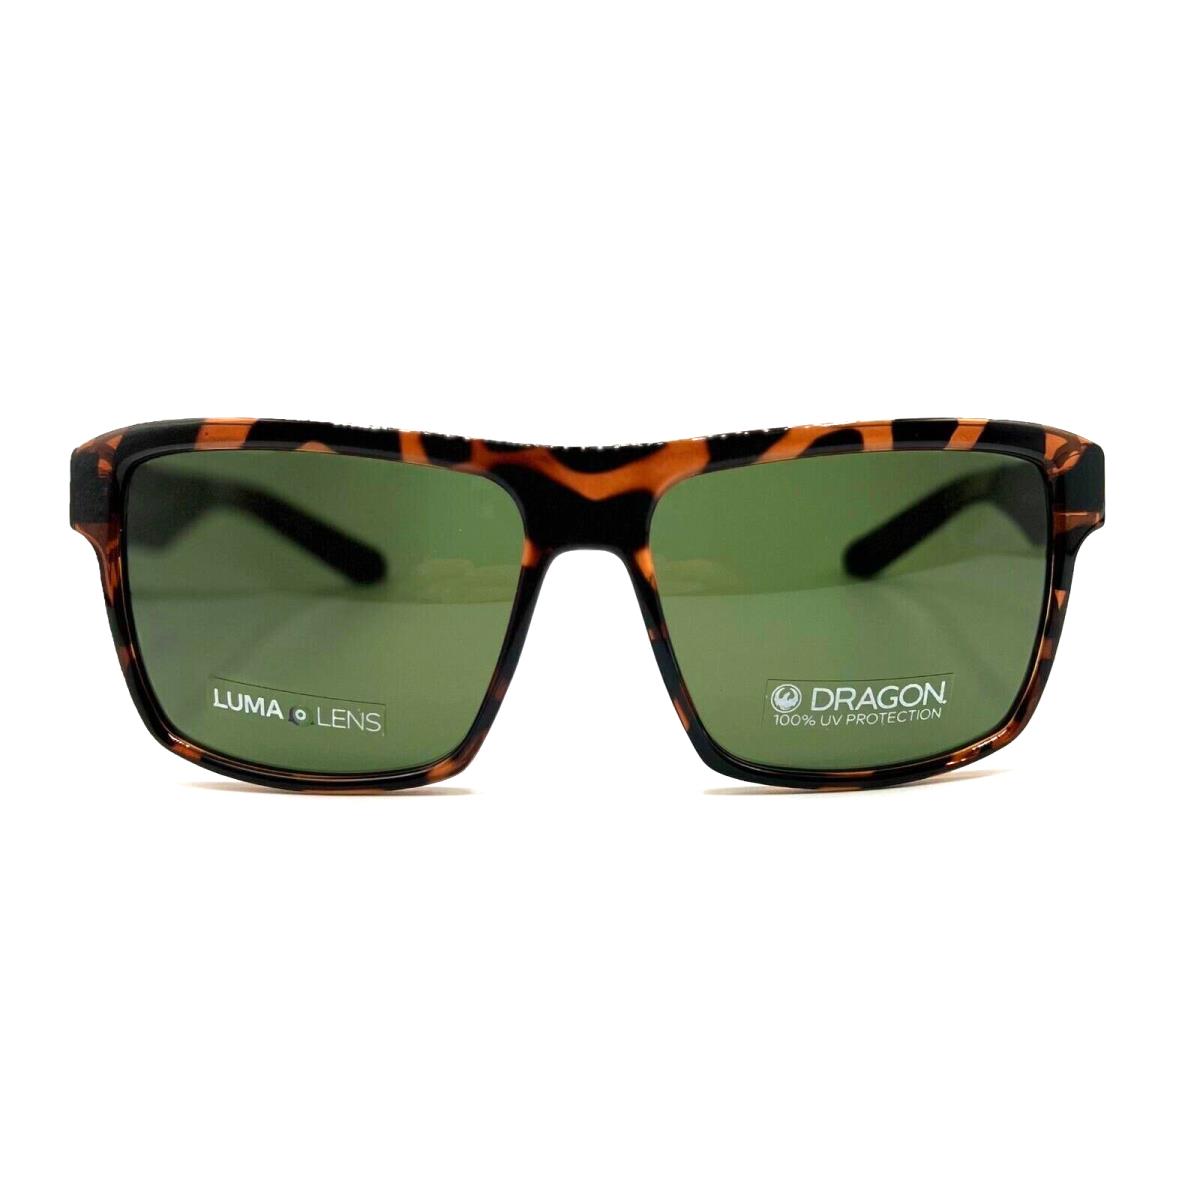 Dragon - Space LL 246 59/15/145 - Dark Tortoise - Men Sunglasses - Frame: Brown, Lens: Green